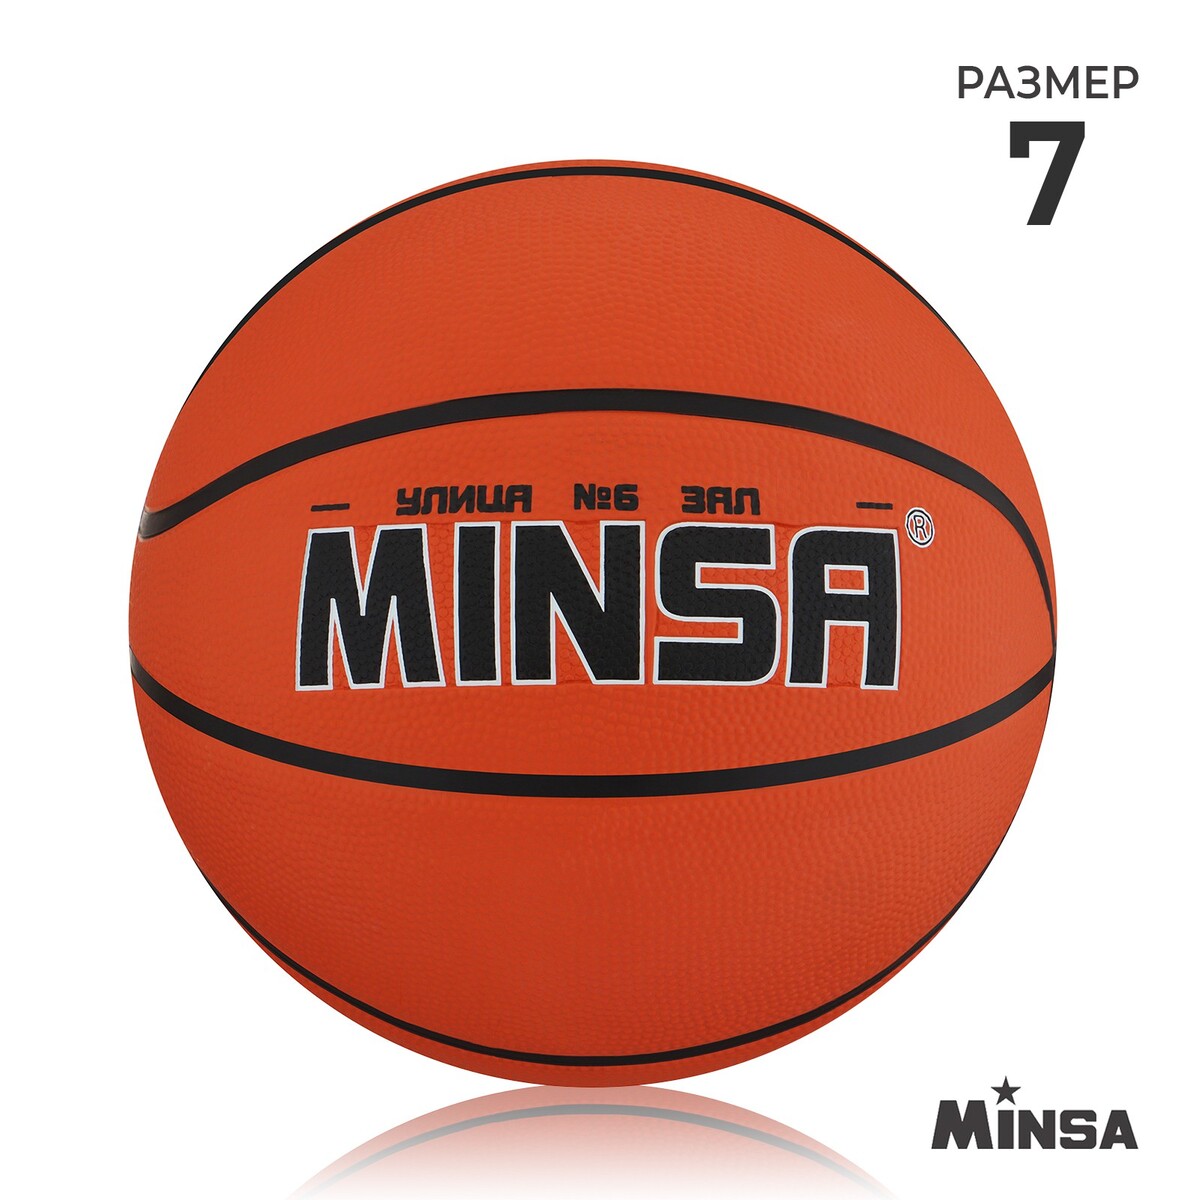 Мяч баскетбольный minsa, пвх, клееный, 8 панелей, р. 7 баскетбольный мяч minsa тренировочный pu клееный 8 панелей р 6